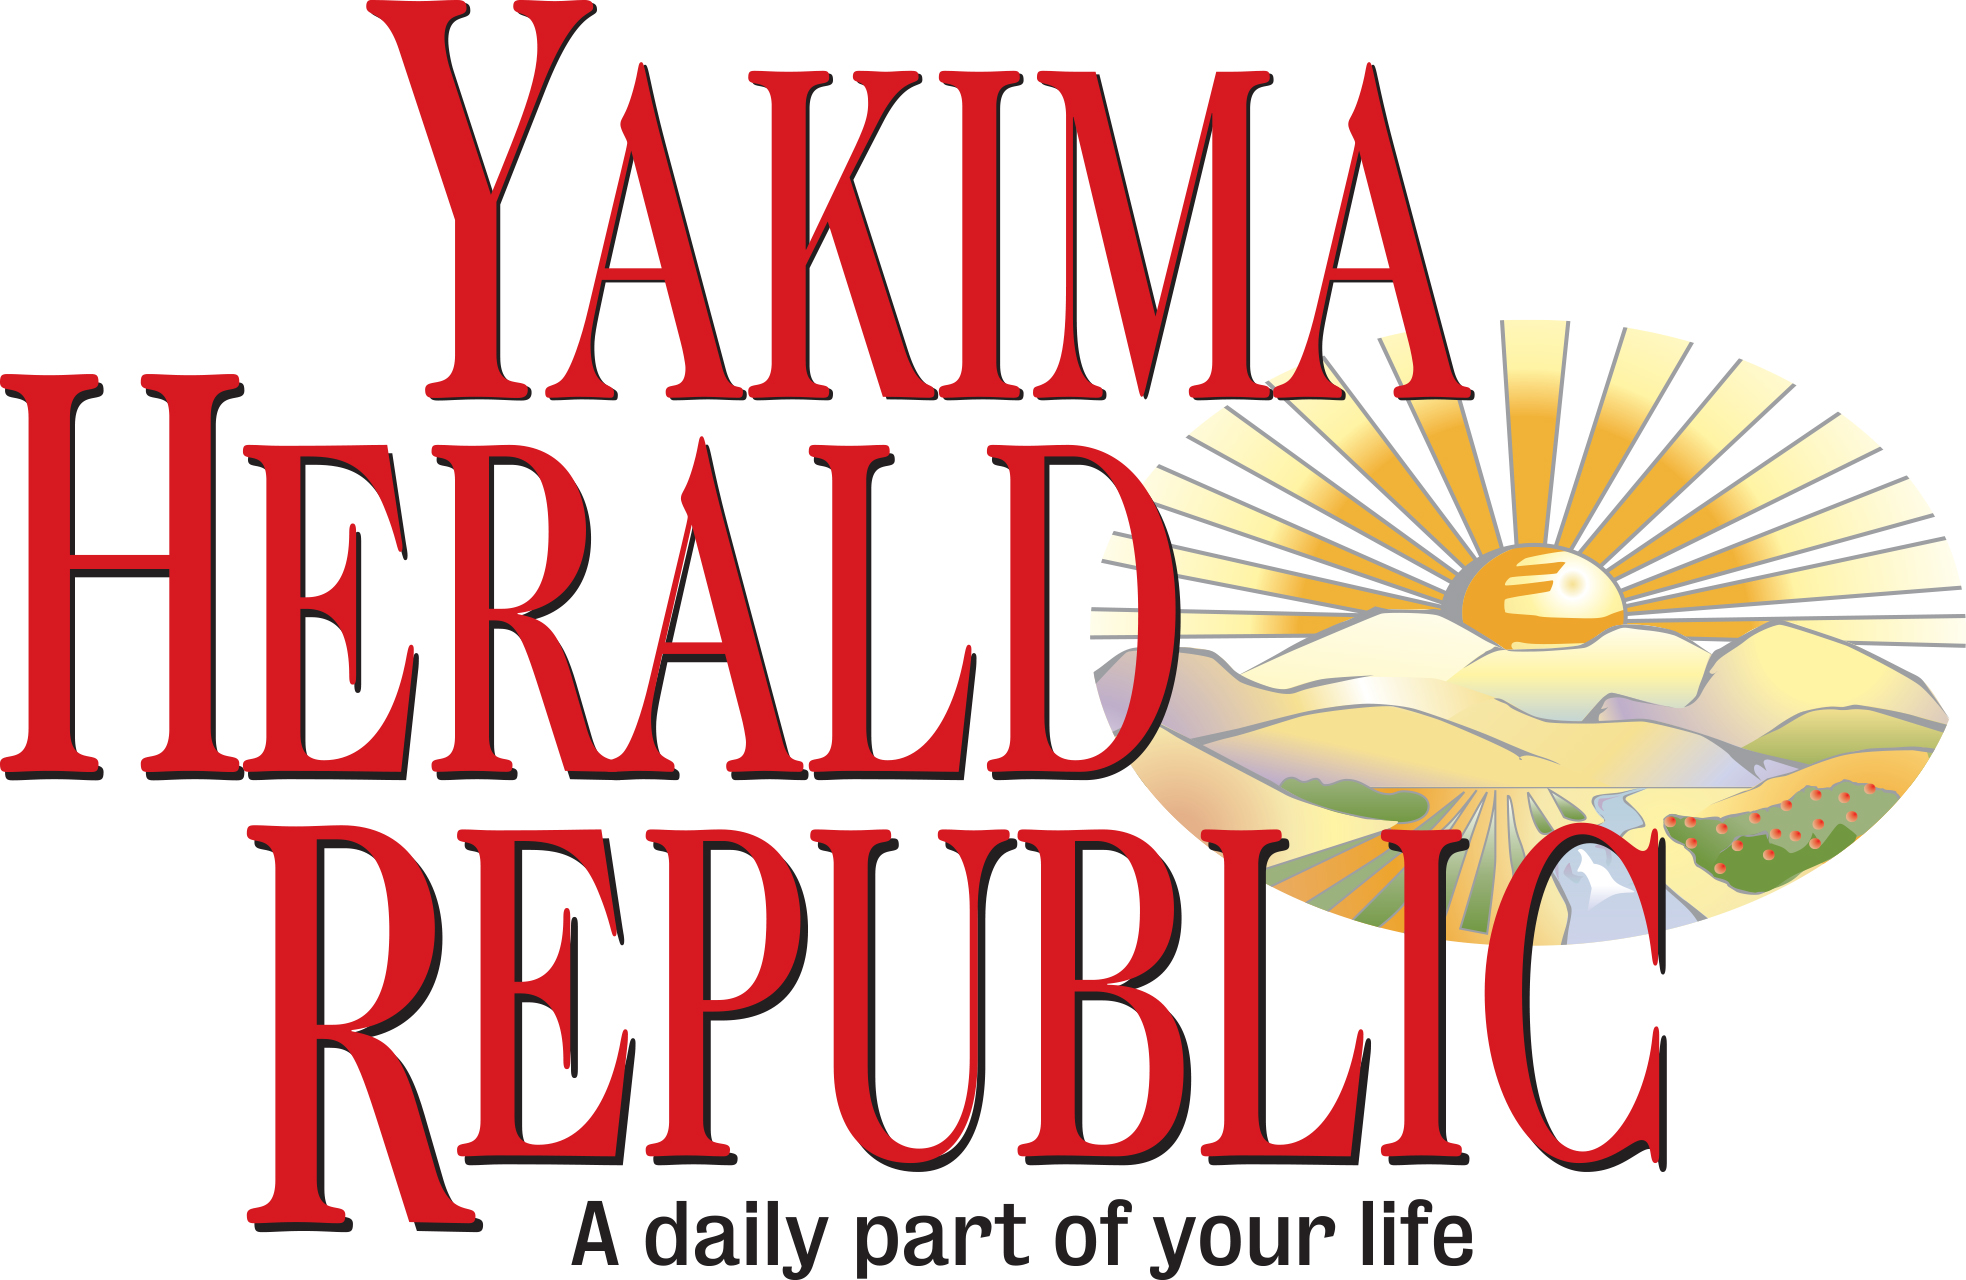 Yakima Herald Republic